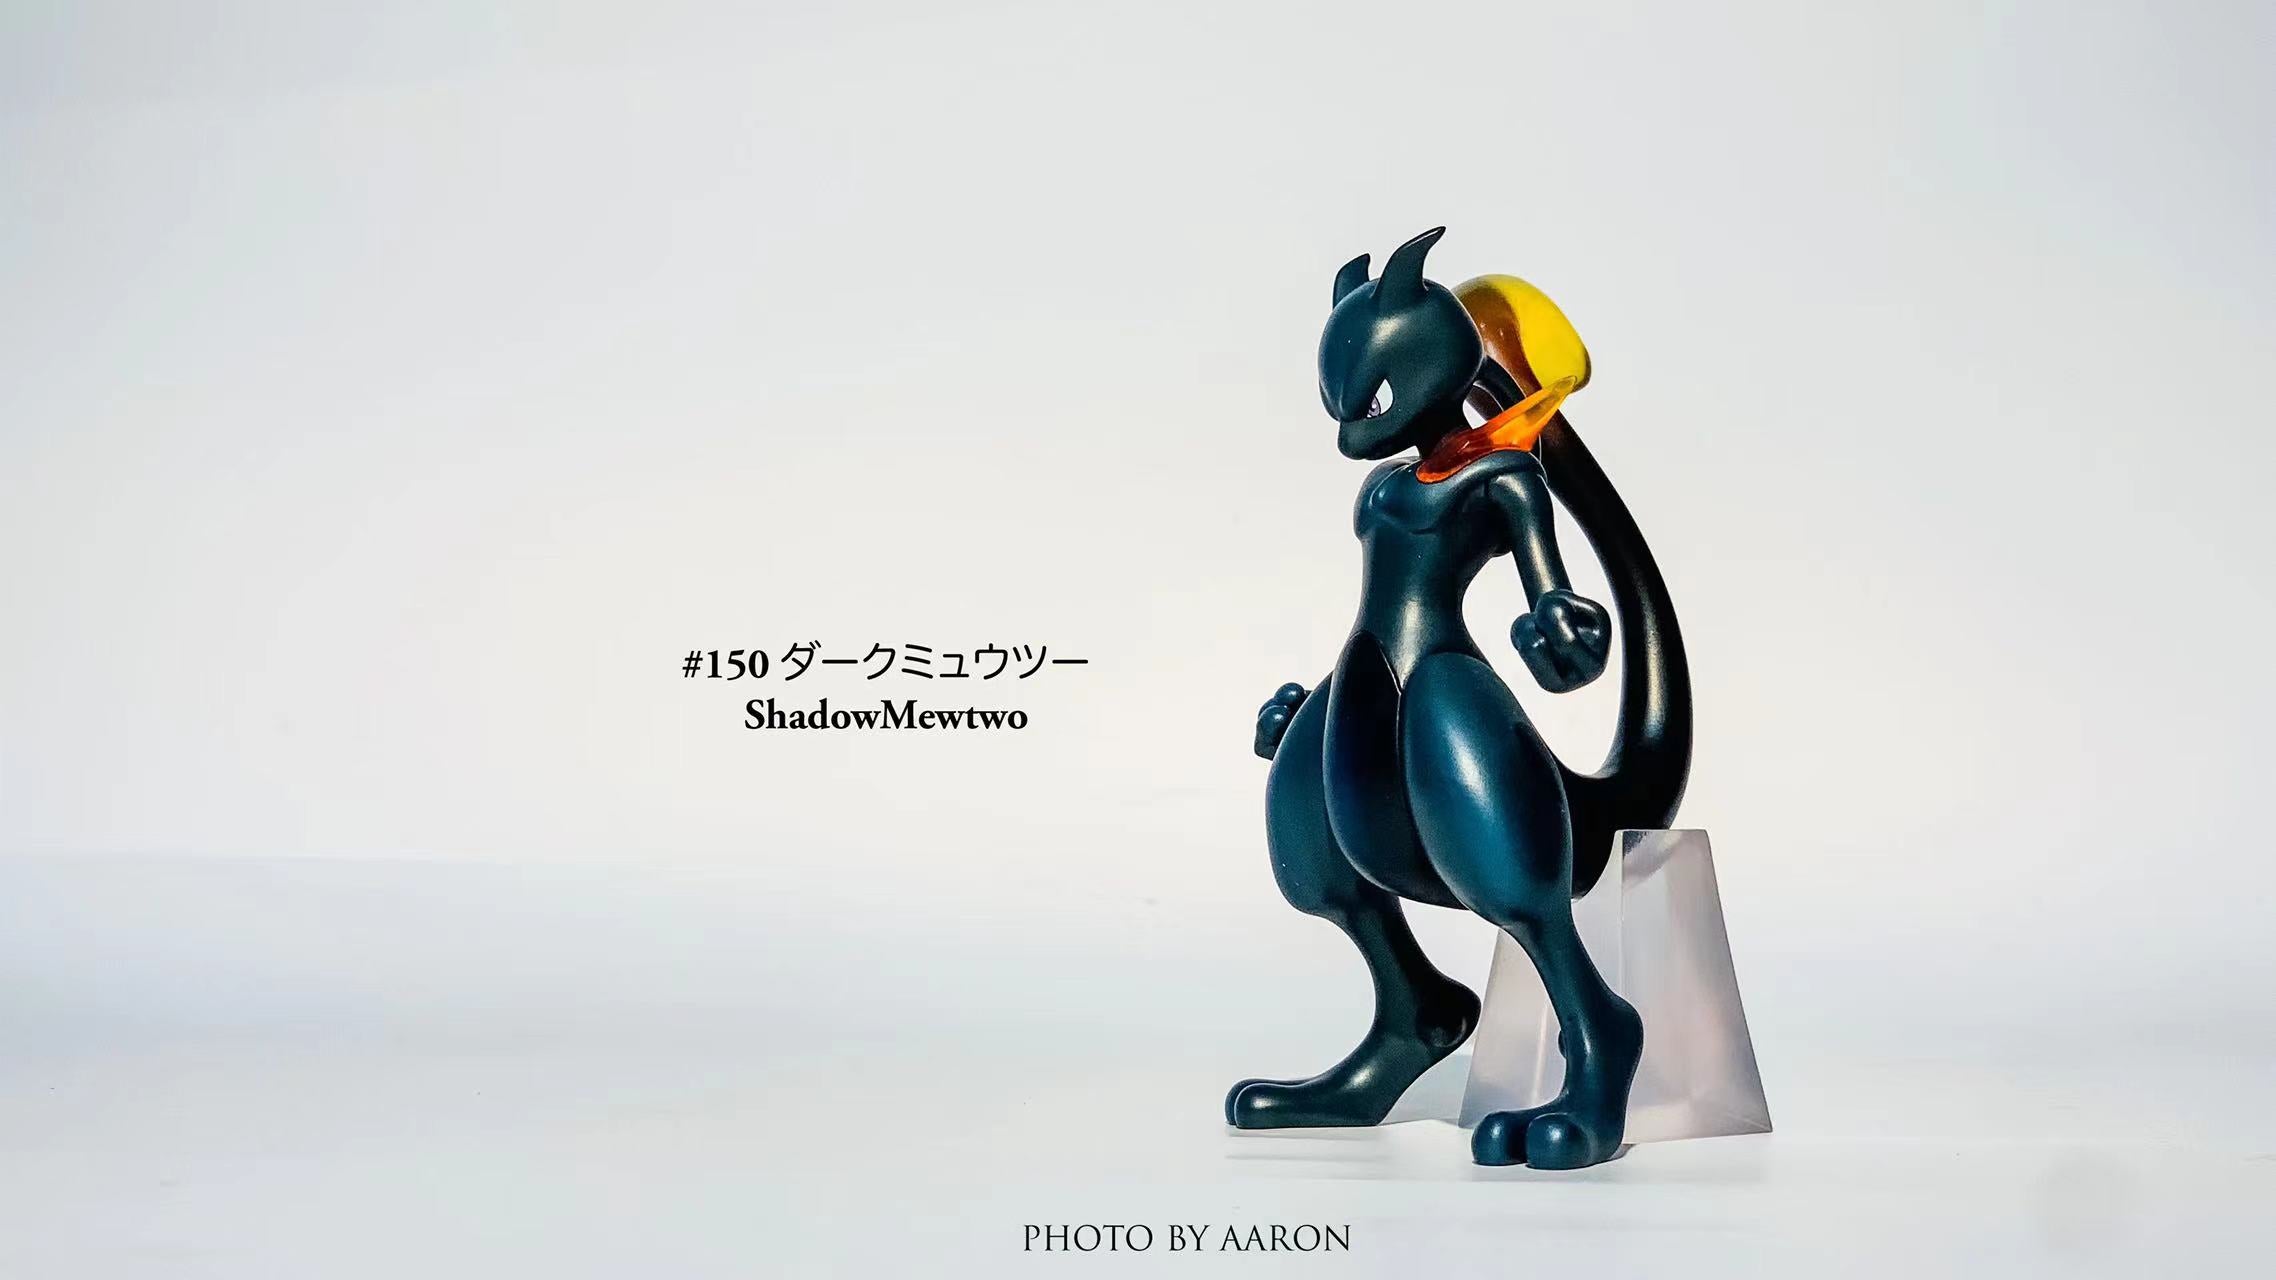 Love Mew Pokemon Model/figurine -  Norway